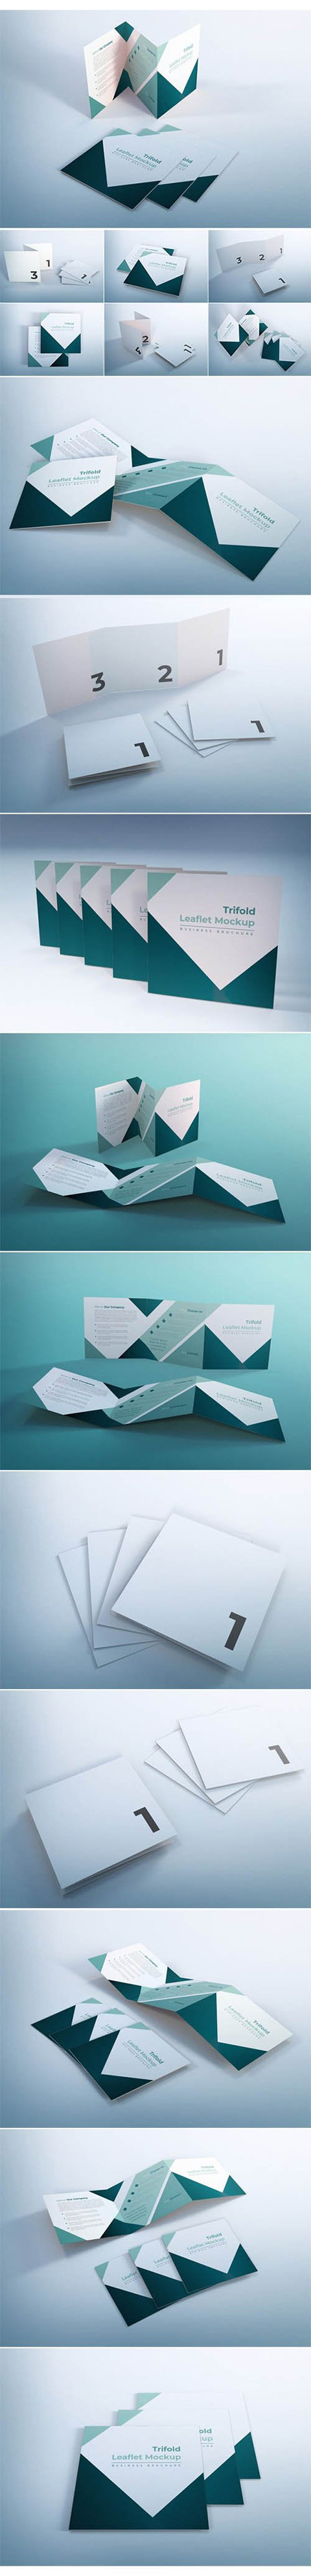 Trifold leaflet mockup business brochure design template